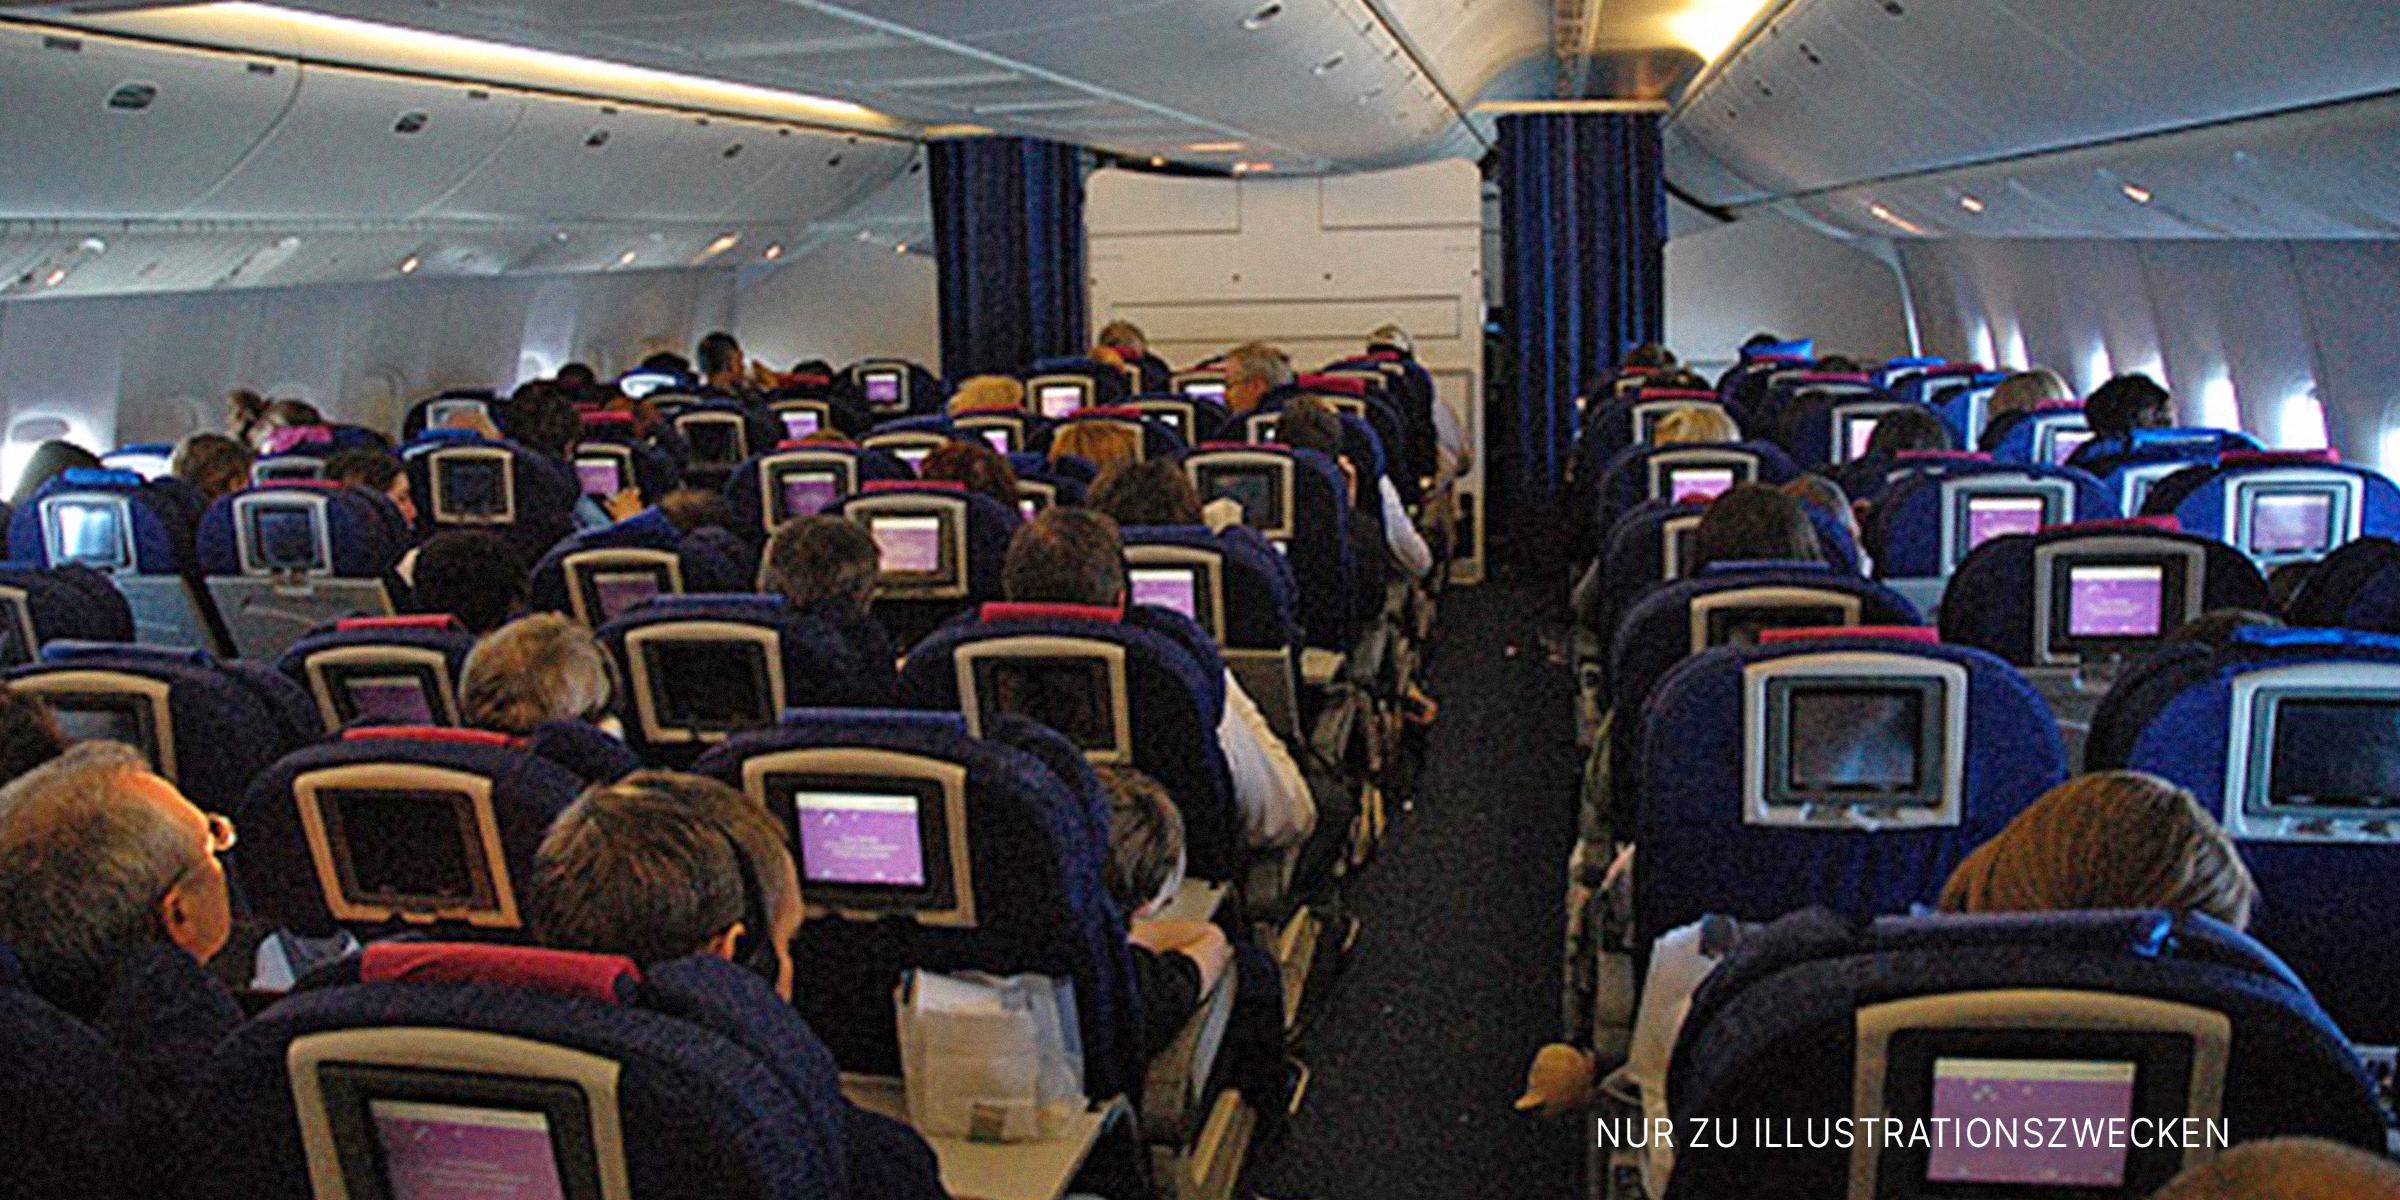 Innenraum einer Flugzeugkabine | Quelle: Flickr / caribb (CC BY-SA 2.0)